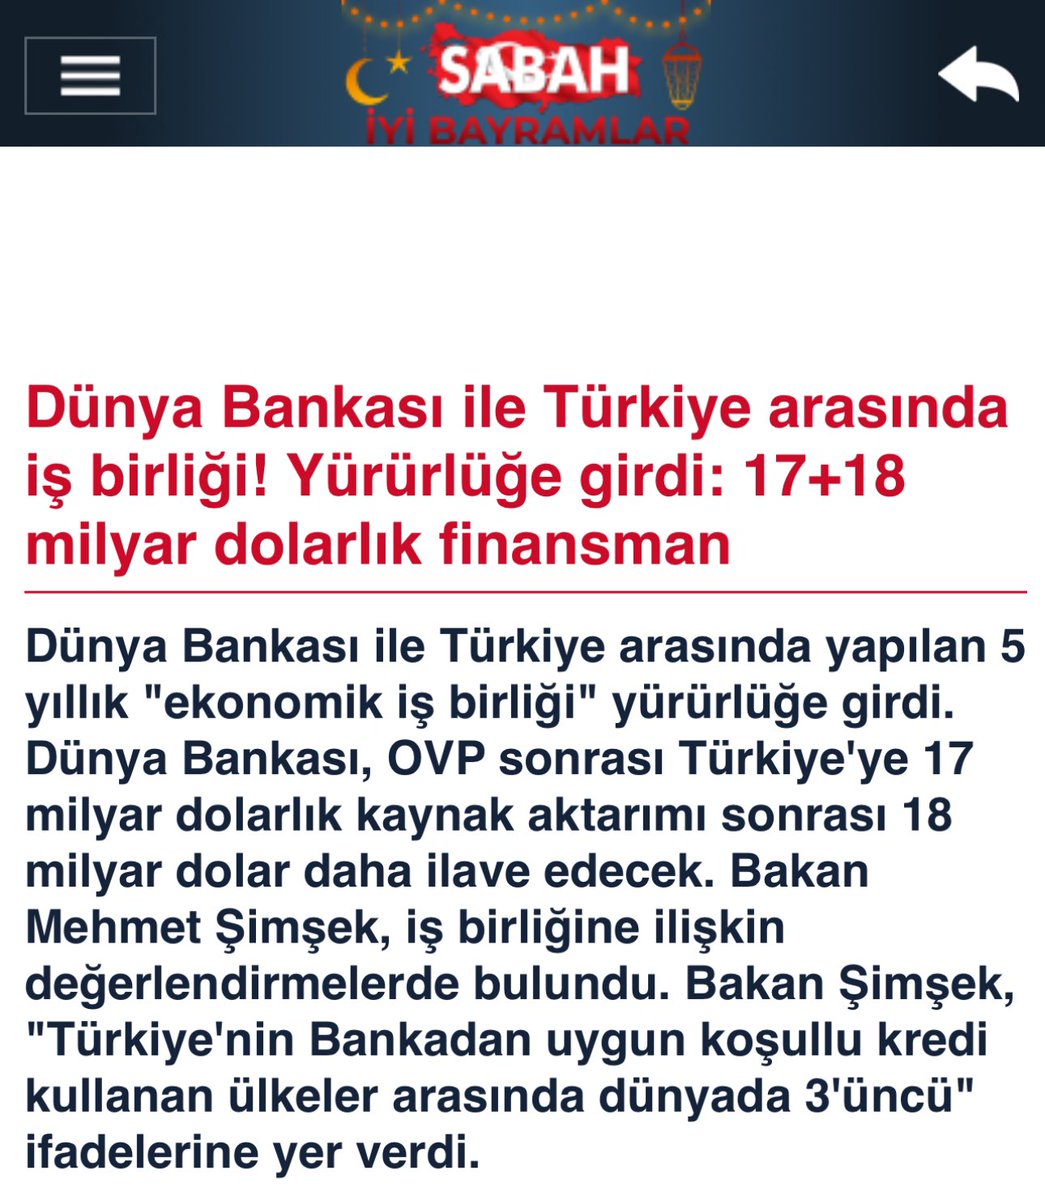 Dünya Bankası ile Türkiye arasında iş birliği! Yürürlüğe girdi: 17+18 milyar dolarlık finansman

#borsa #borsa #borsa